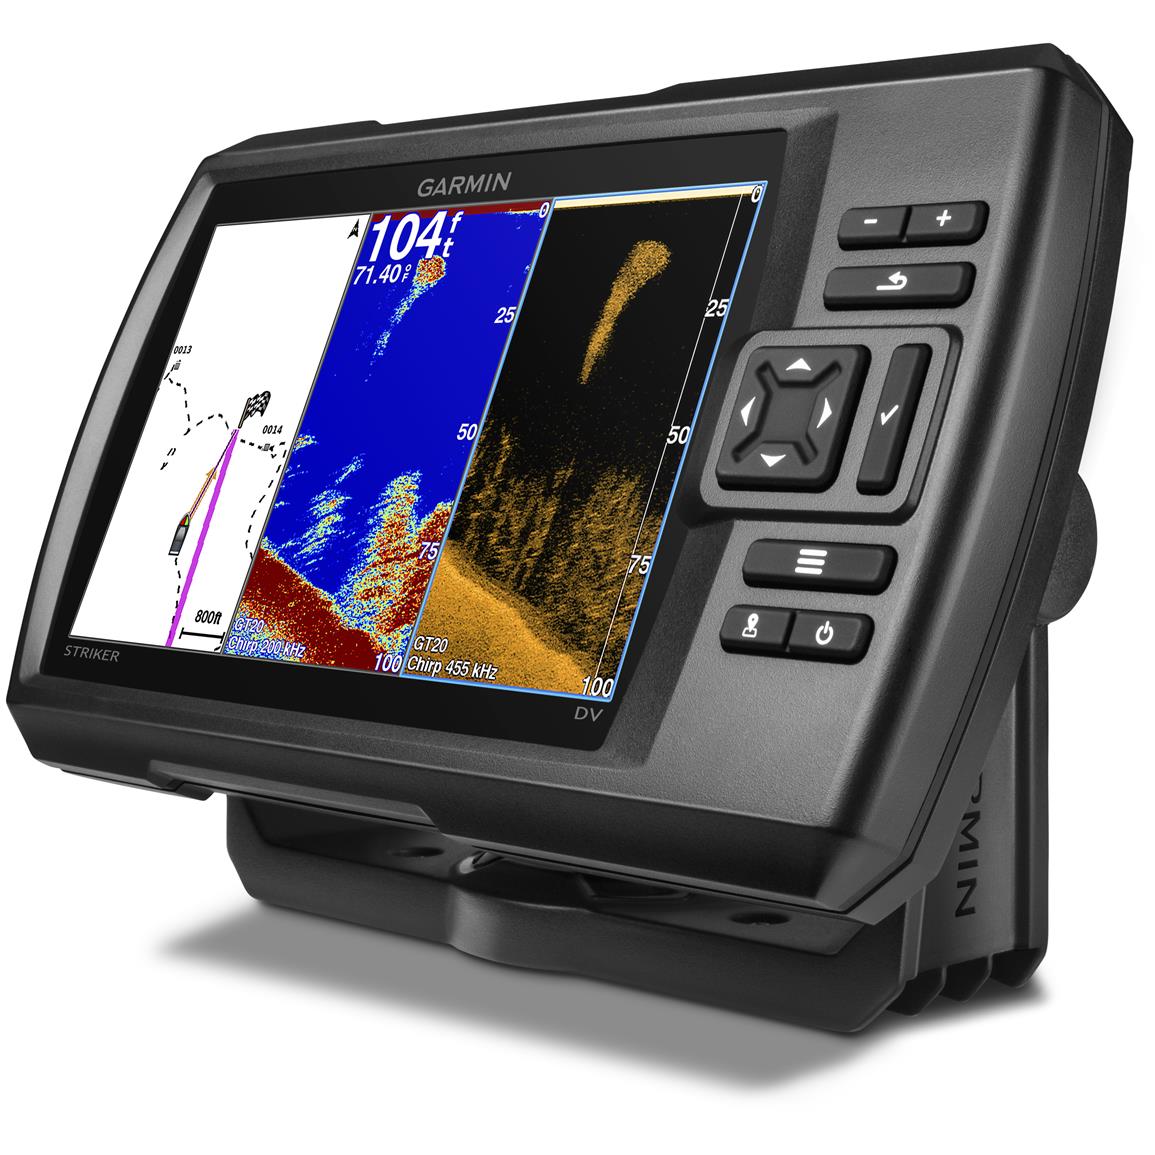 Garmin STRIKER 7dv CHIRP Fishfinder With GPS And DownVu Scanning Sonar 